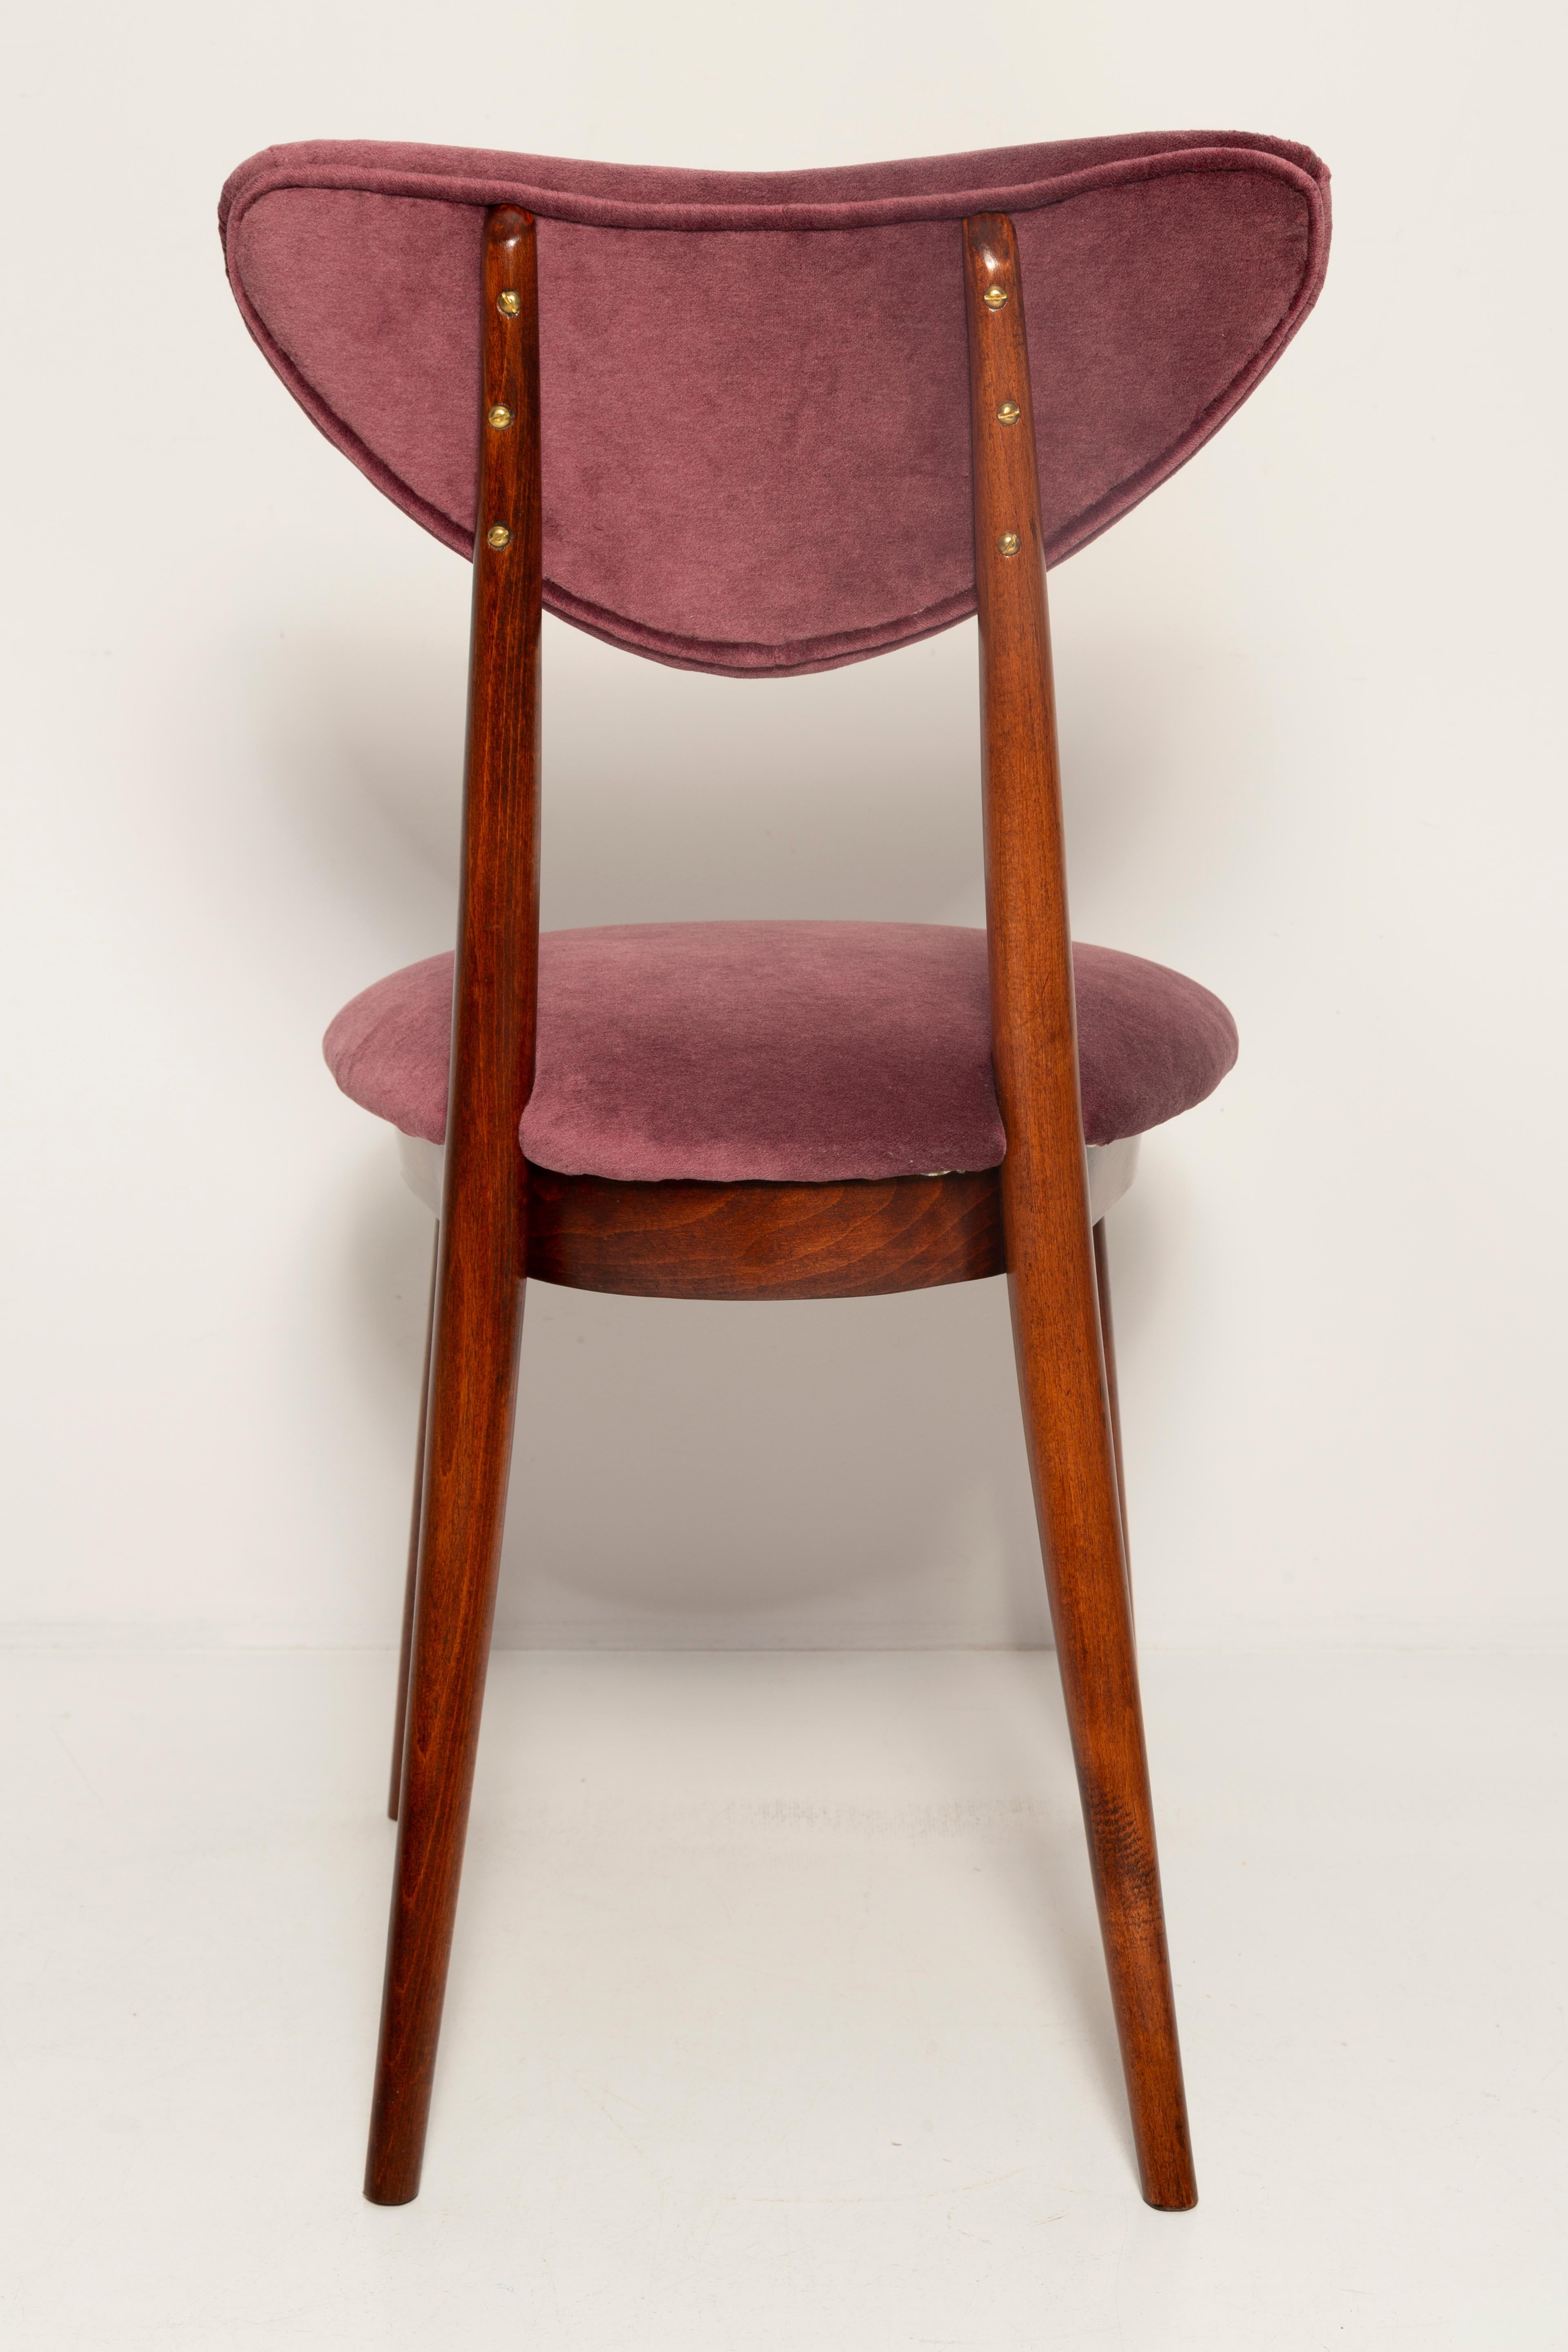 Midcentury Plum Violet Velvet Heart Chair, Europe, 1960s For Sale 5